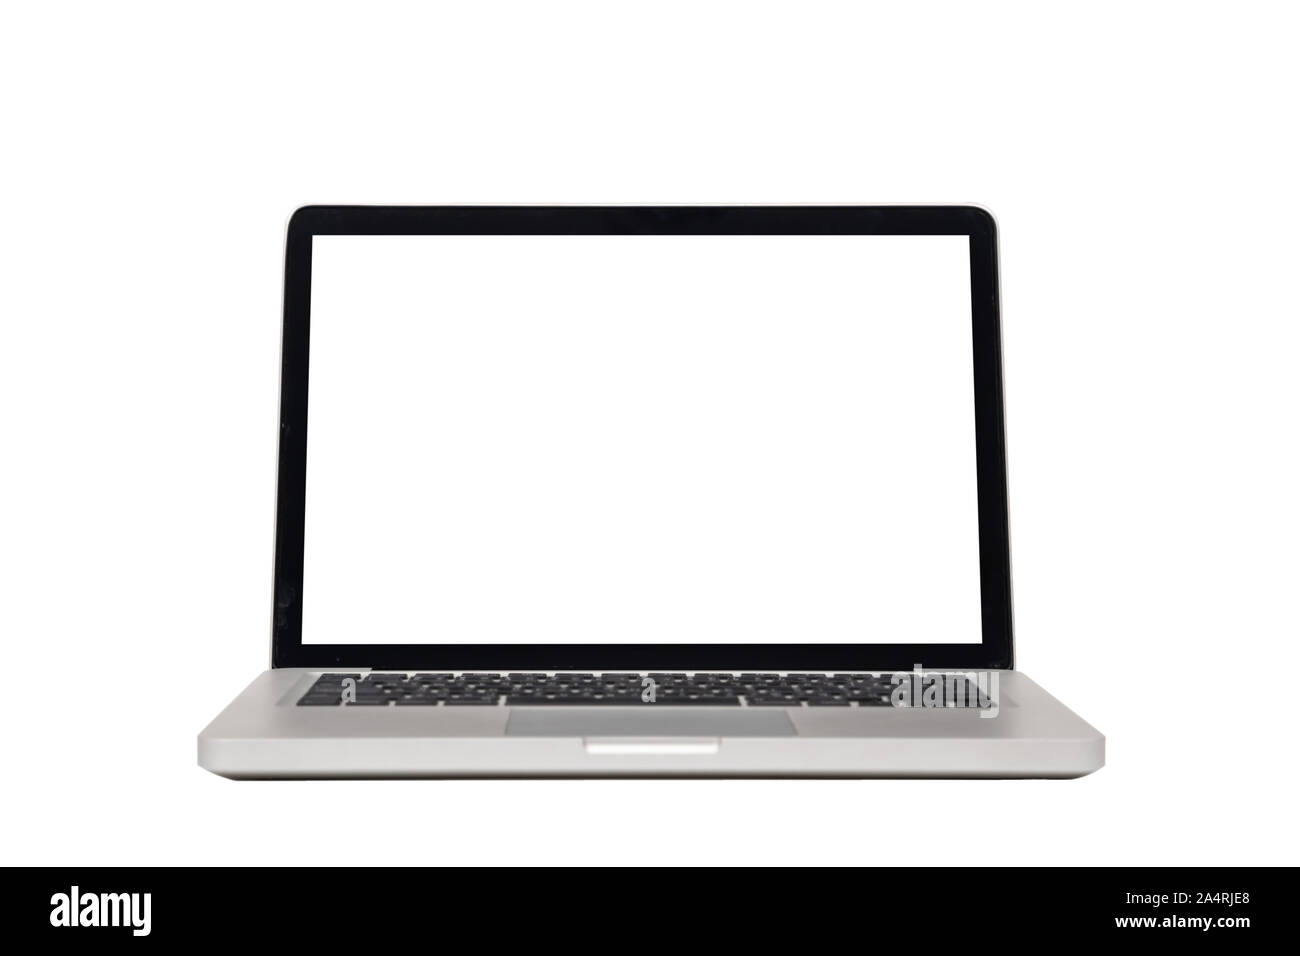 Computer portatile mock up con vuoto schermata vuota bianca isolata su sfondo bianco con percorso di clipping, vista frontale. computer moderno concetto di tecnologia Foto Stock